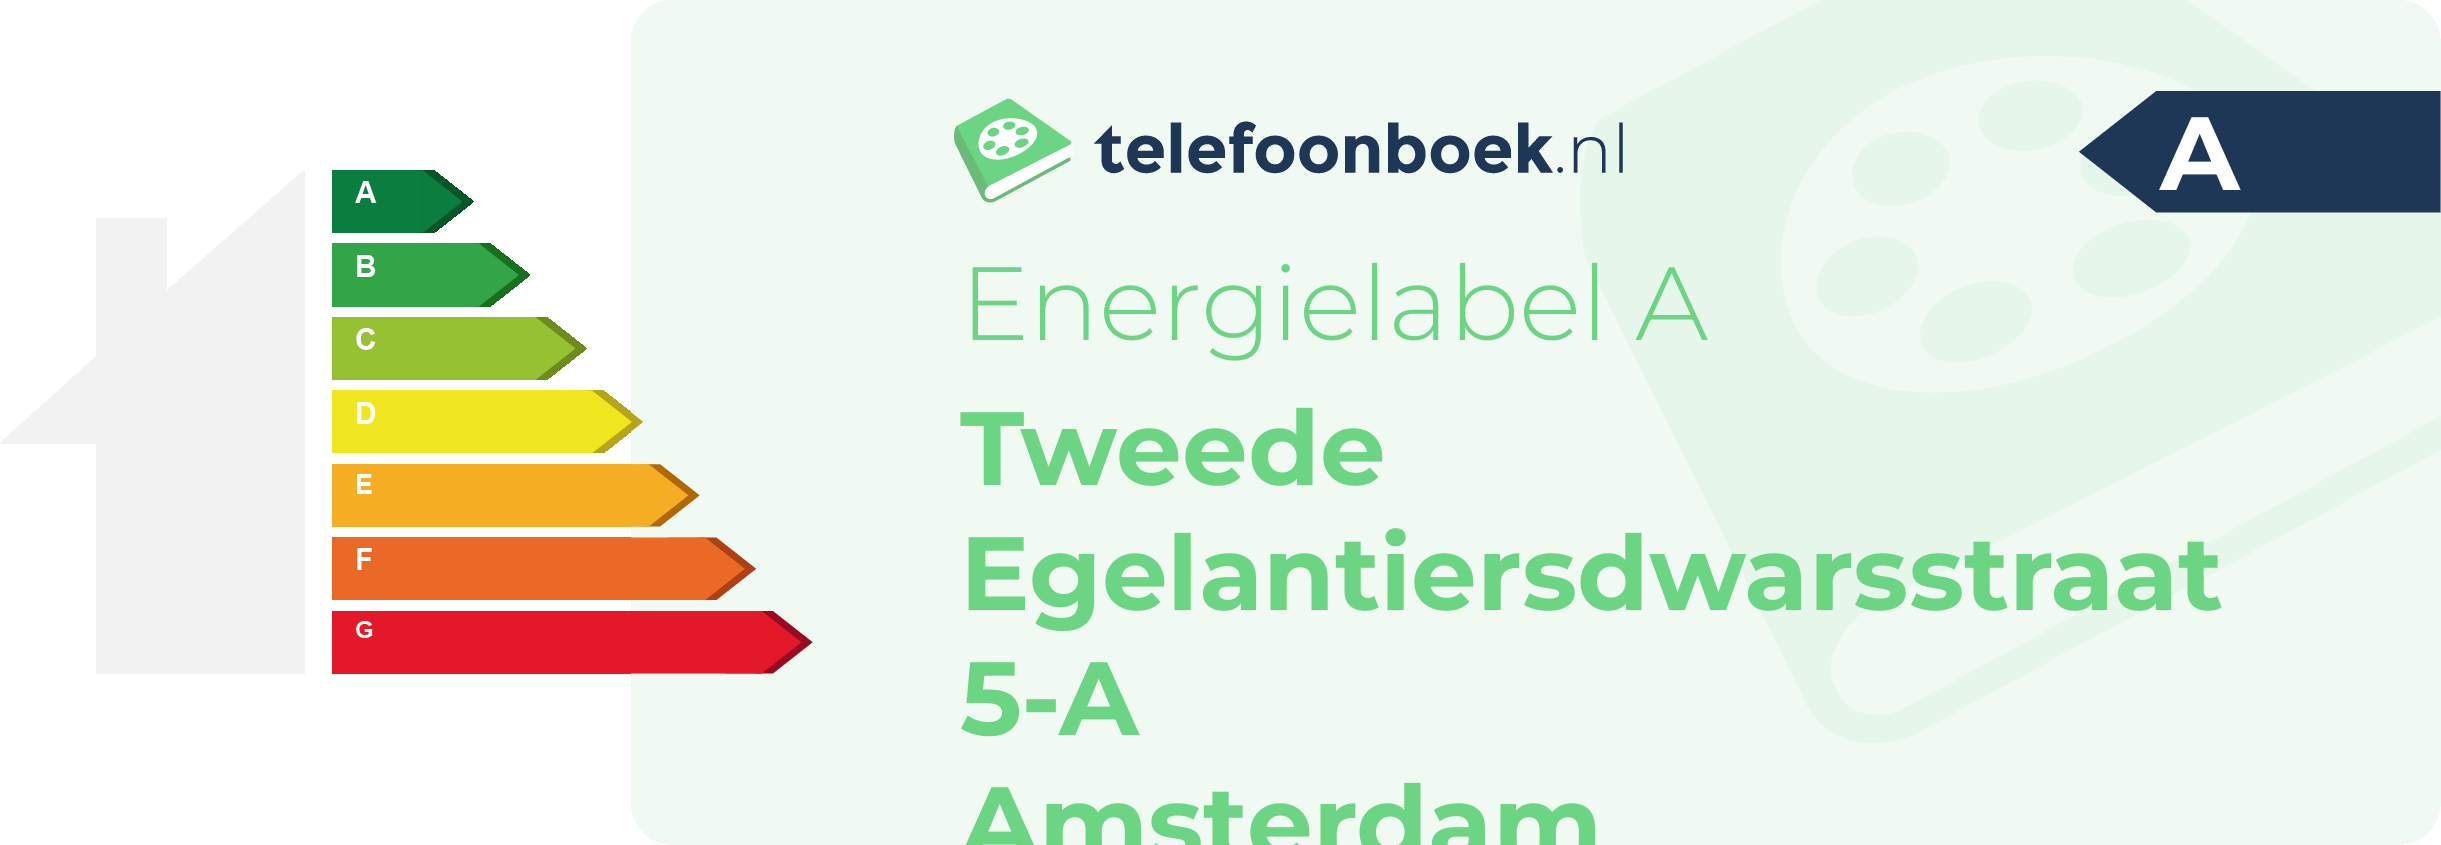 Energielabel Tweede Egelantiersdwarsstraat 5-A Amsterdam